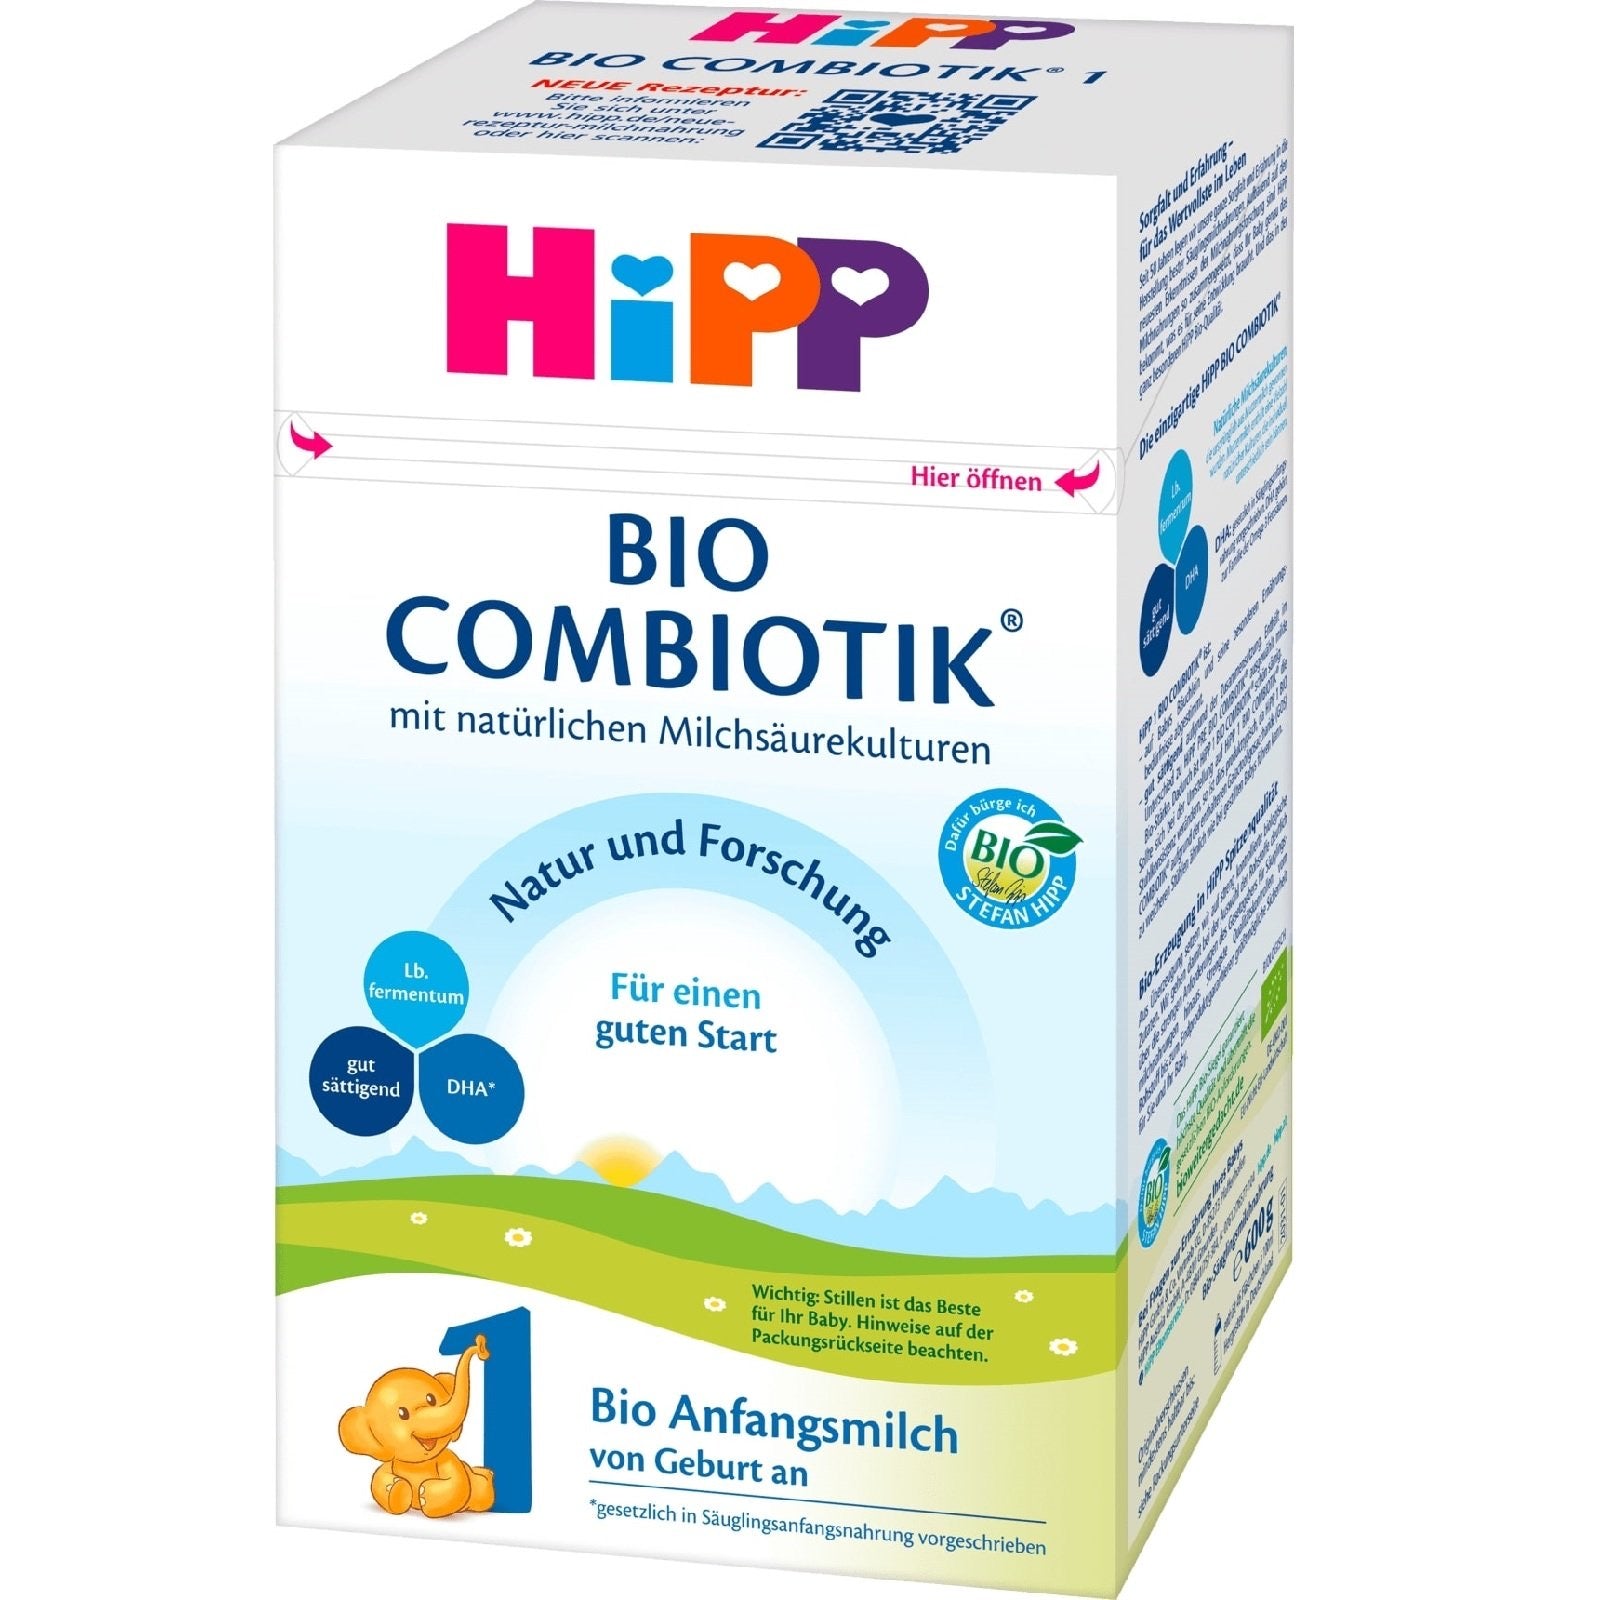 HiPP Stage 1 German - Organic Combiotik Formula (600g) (4 boxes)